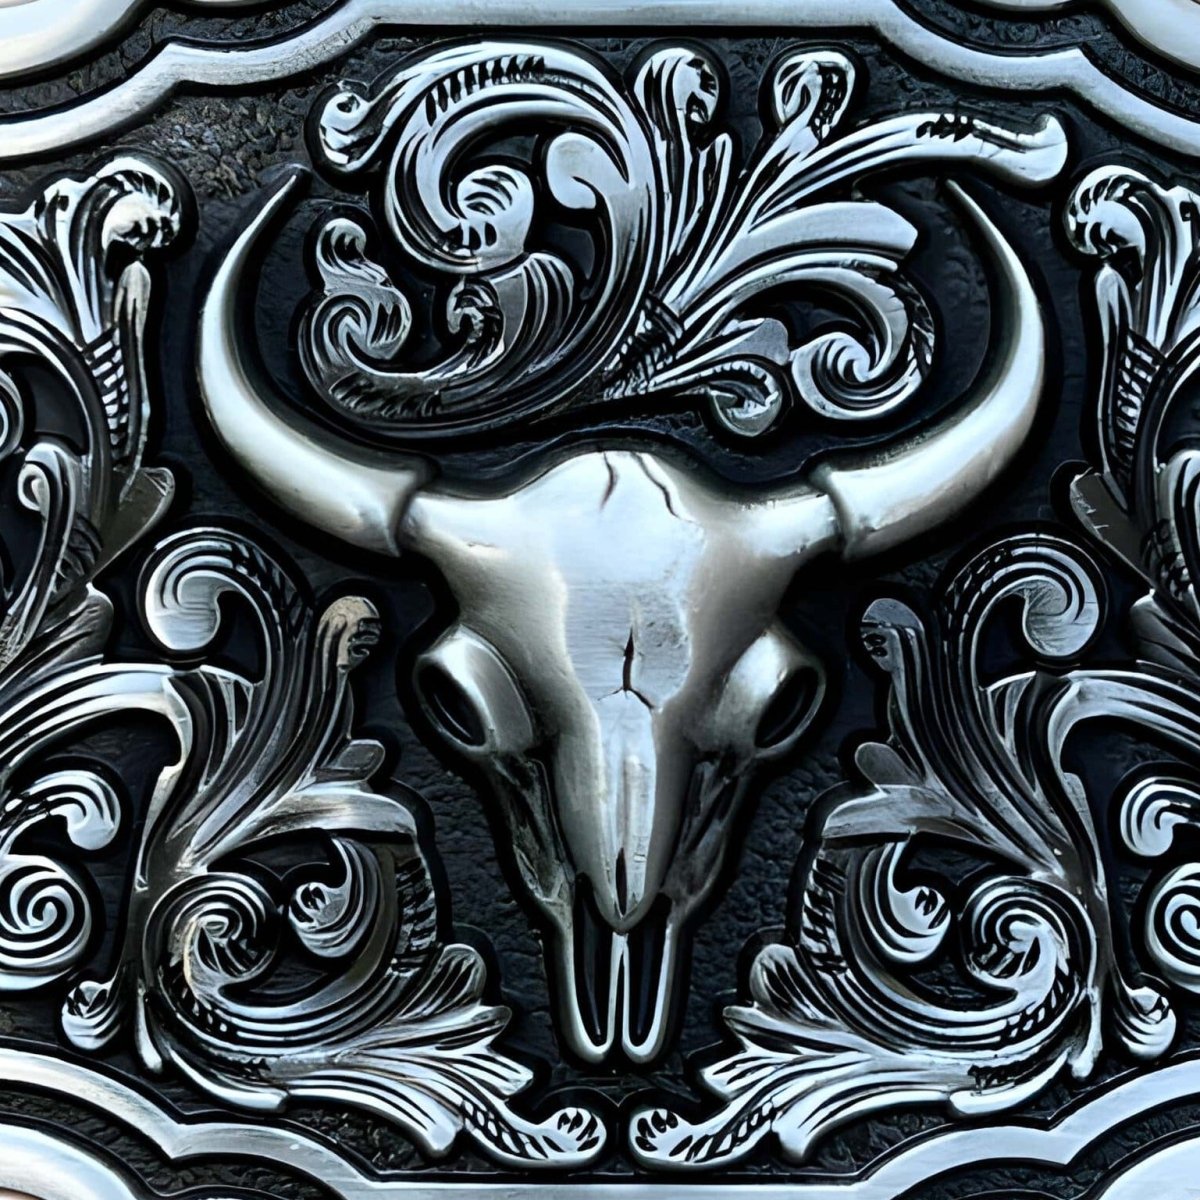 Boucle de ceinture Western, crâne de taureau, modèle Clay - La Boutique de la Ceinture